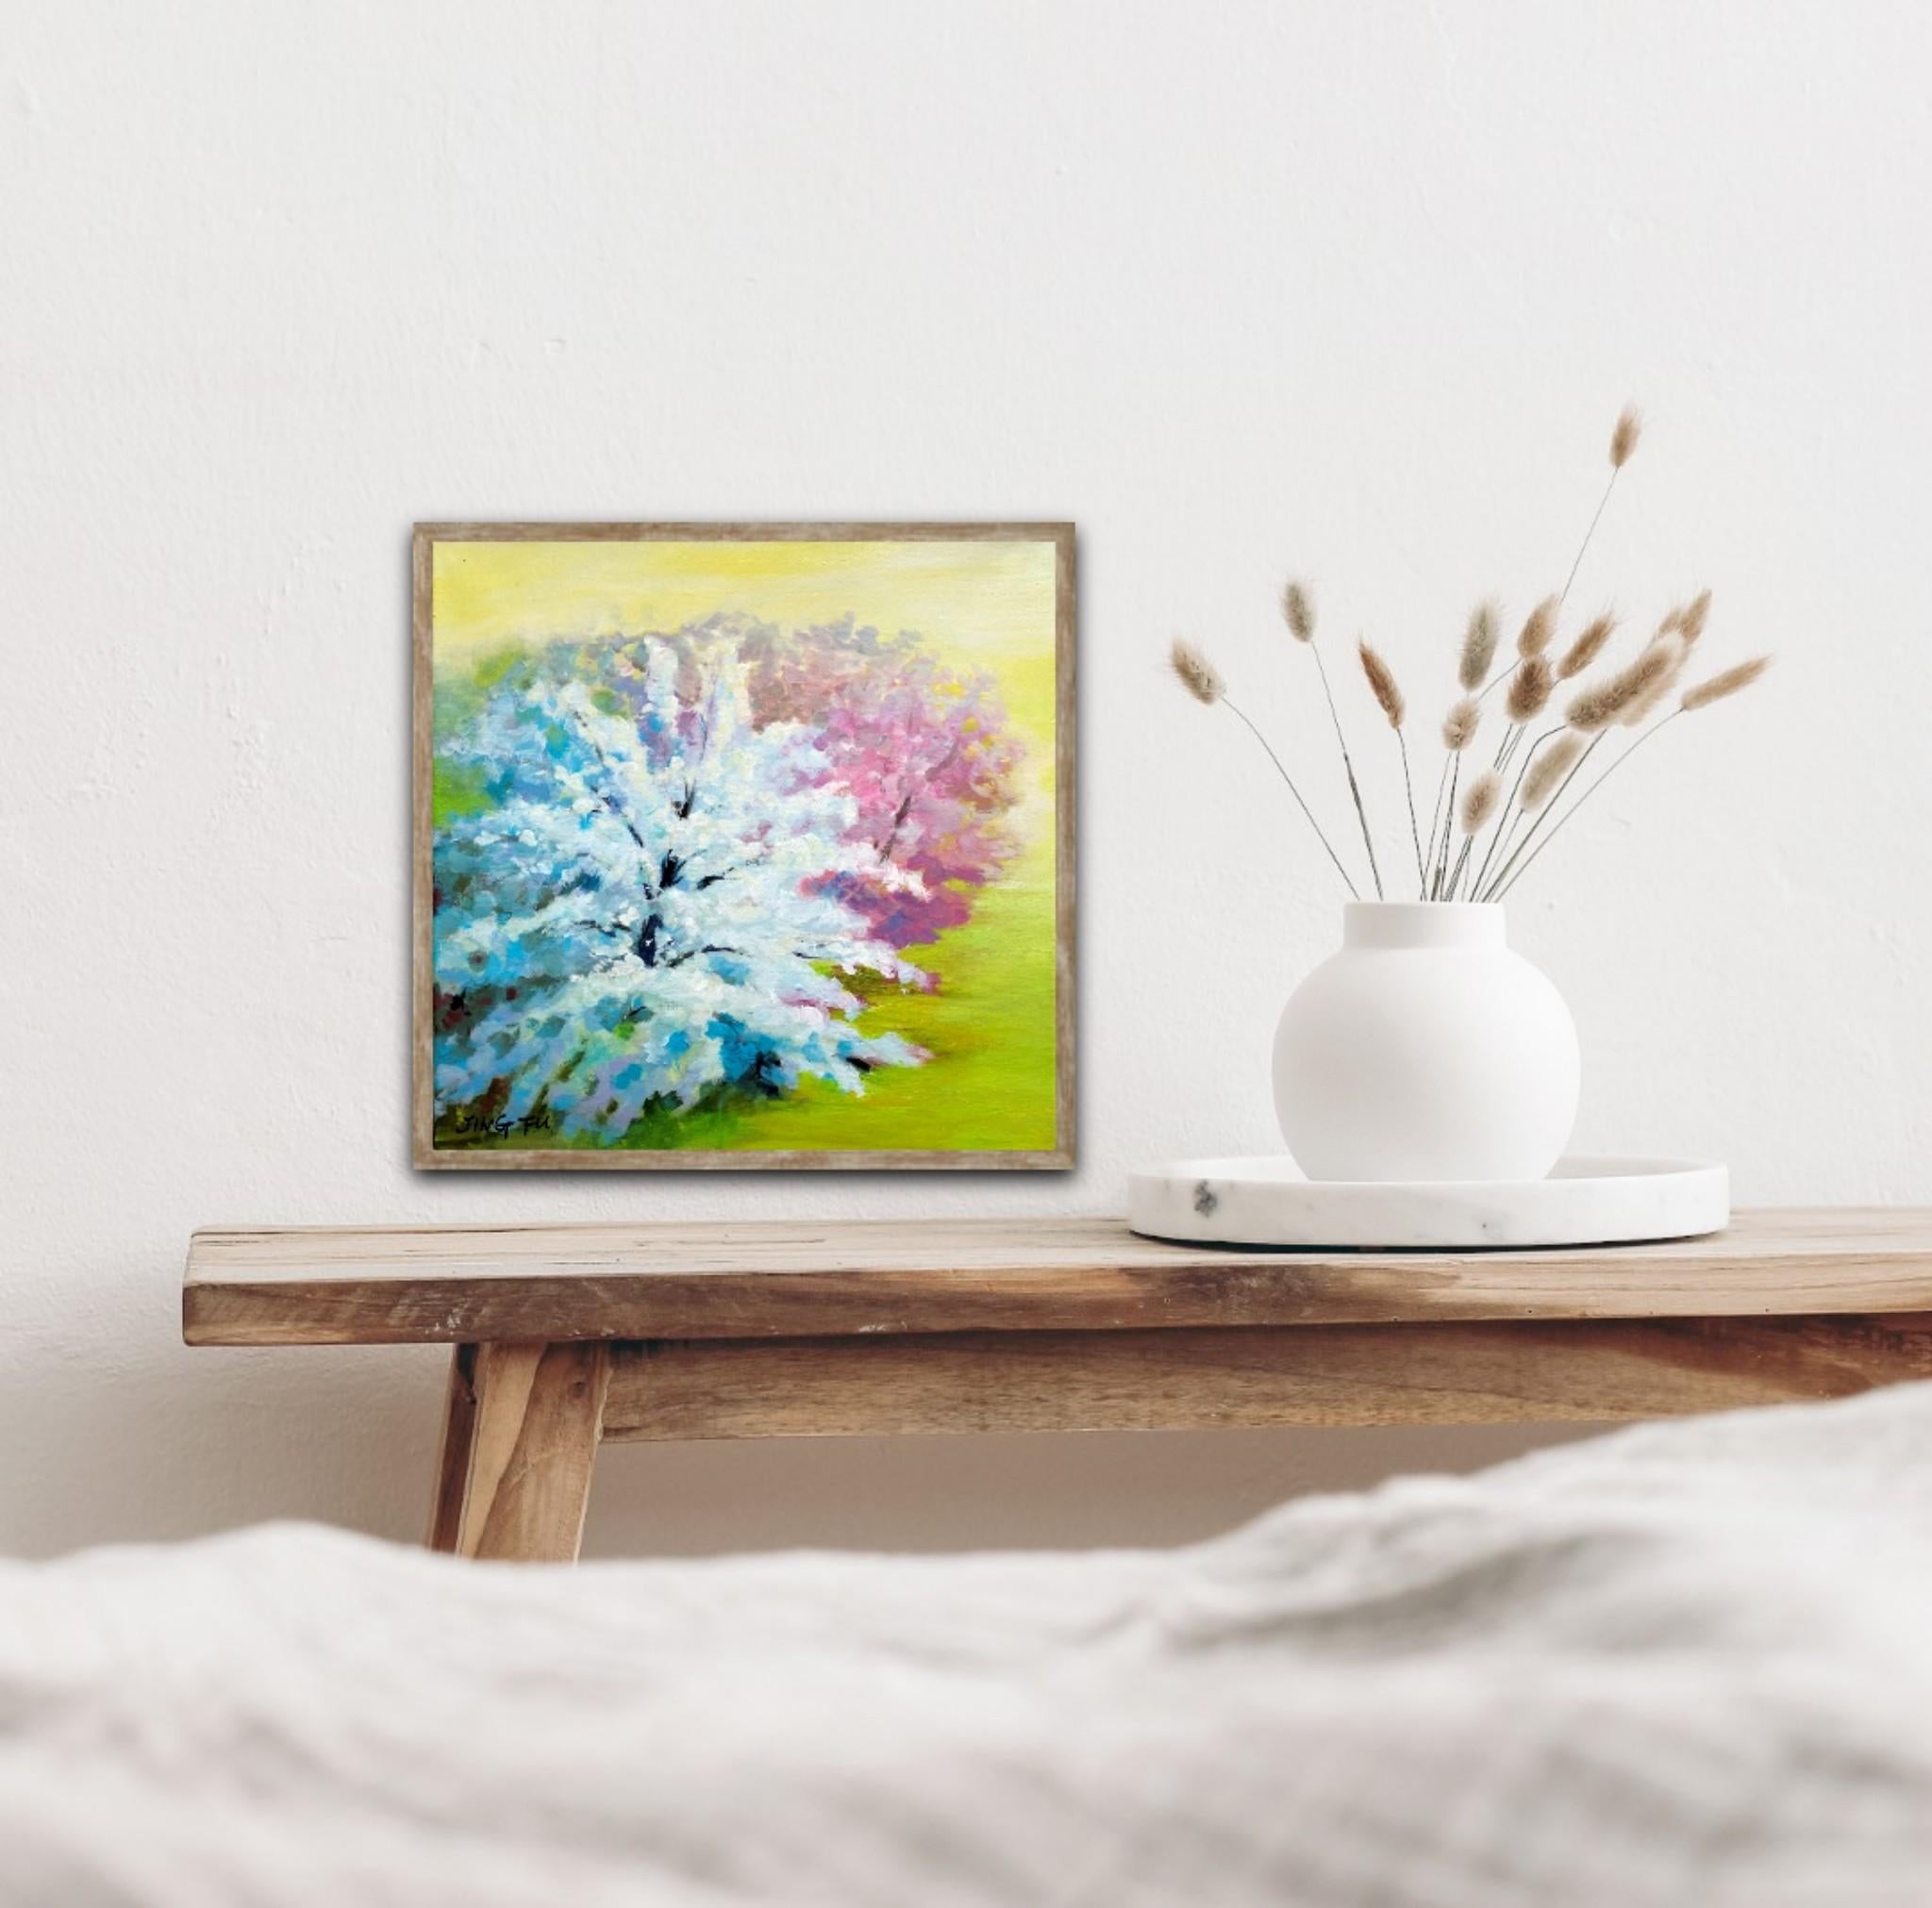 Spring Zest est une peinture à l'huile vibrante sur toile représentant des arbres en fleurs aux couleurs pastel dans un champ vert.
Livré encadré et prêt à être accroché.

